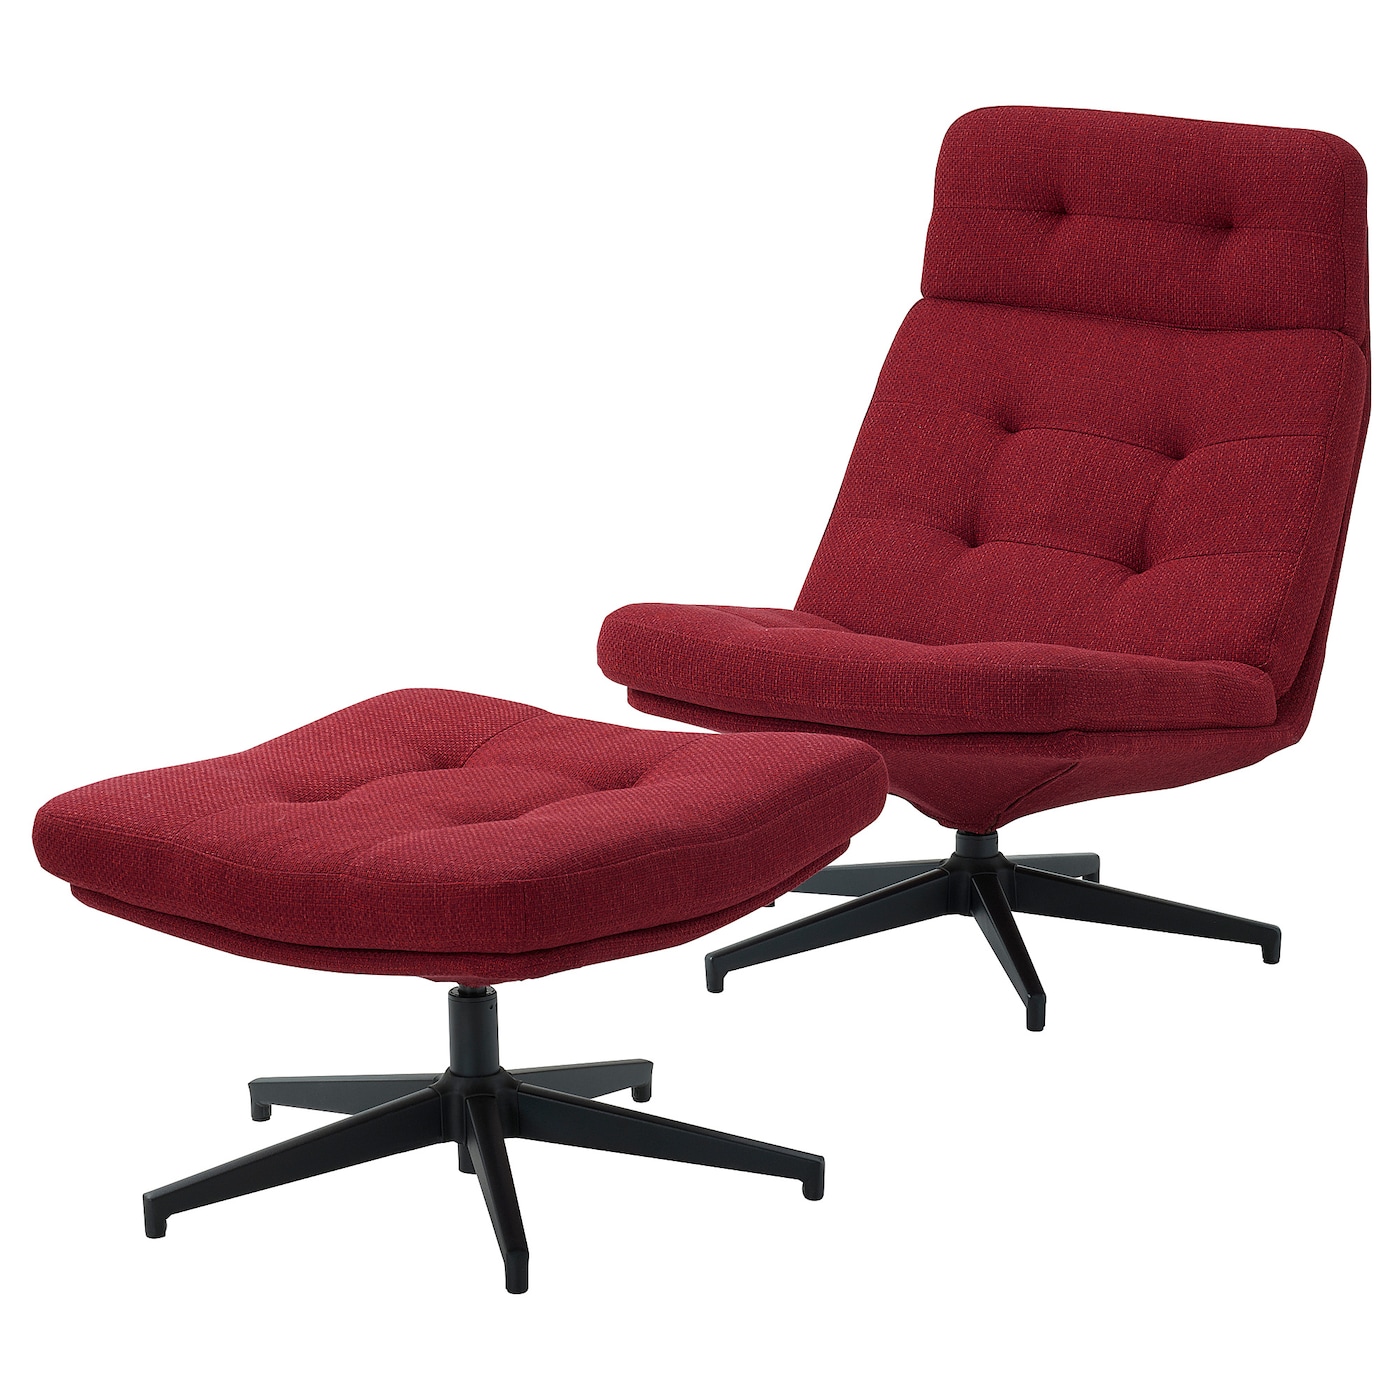 ХАВБЕРГ Кресло и подставка для ног, Лейде красный/коричневый HAVBERG IKEA эргономичное колесико офисное кресло с поддержкой спинки удобное вращающееся игровое кресло подставка для ног офисная мебель